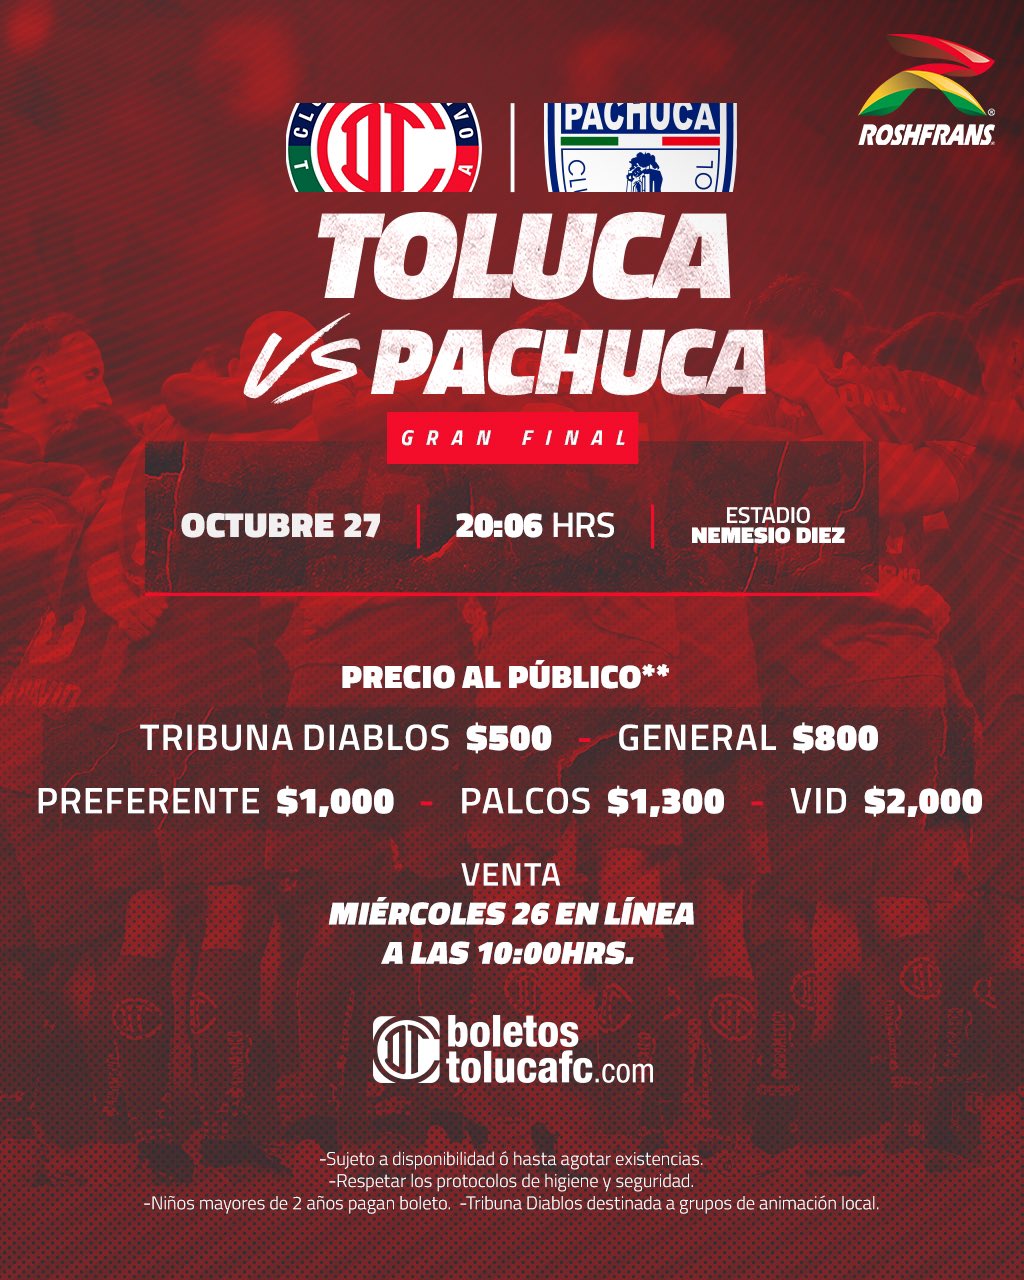 Aficionados del Toluca bloquearon vías afuera del estadio por venta en  línea de boletos de la final - Infobae